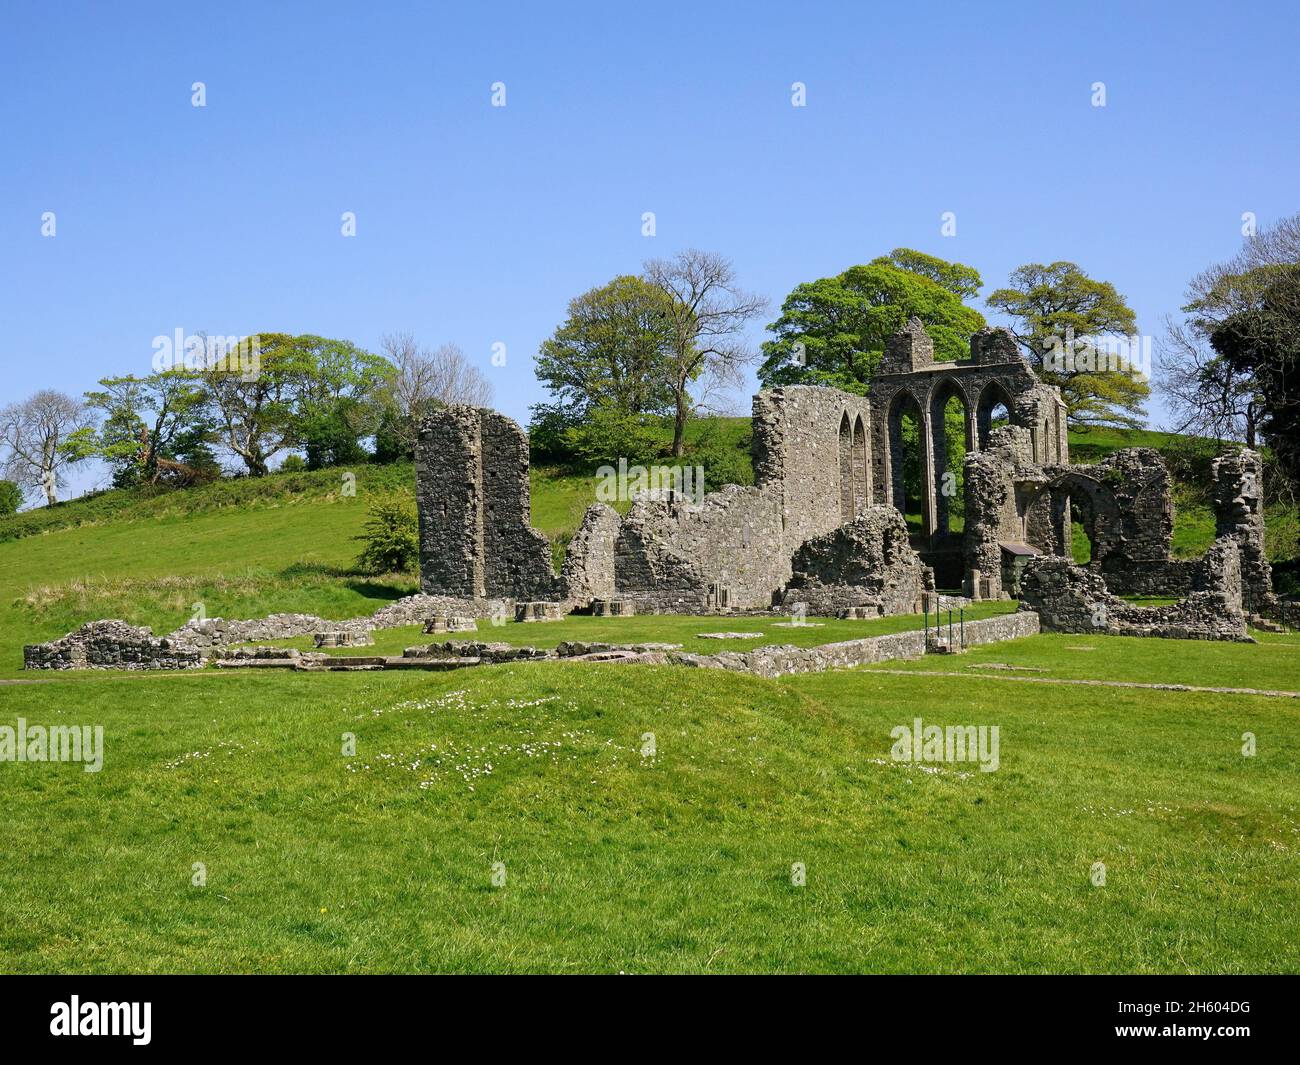 Inch Abbey Ruins, County Down, Irlanda del Nord. L'Abbazia e parti dell'area circostante sono state presentate nel Trono di Spade Foto Stock